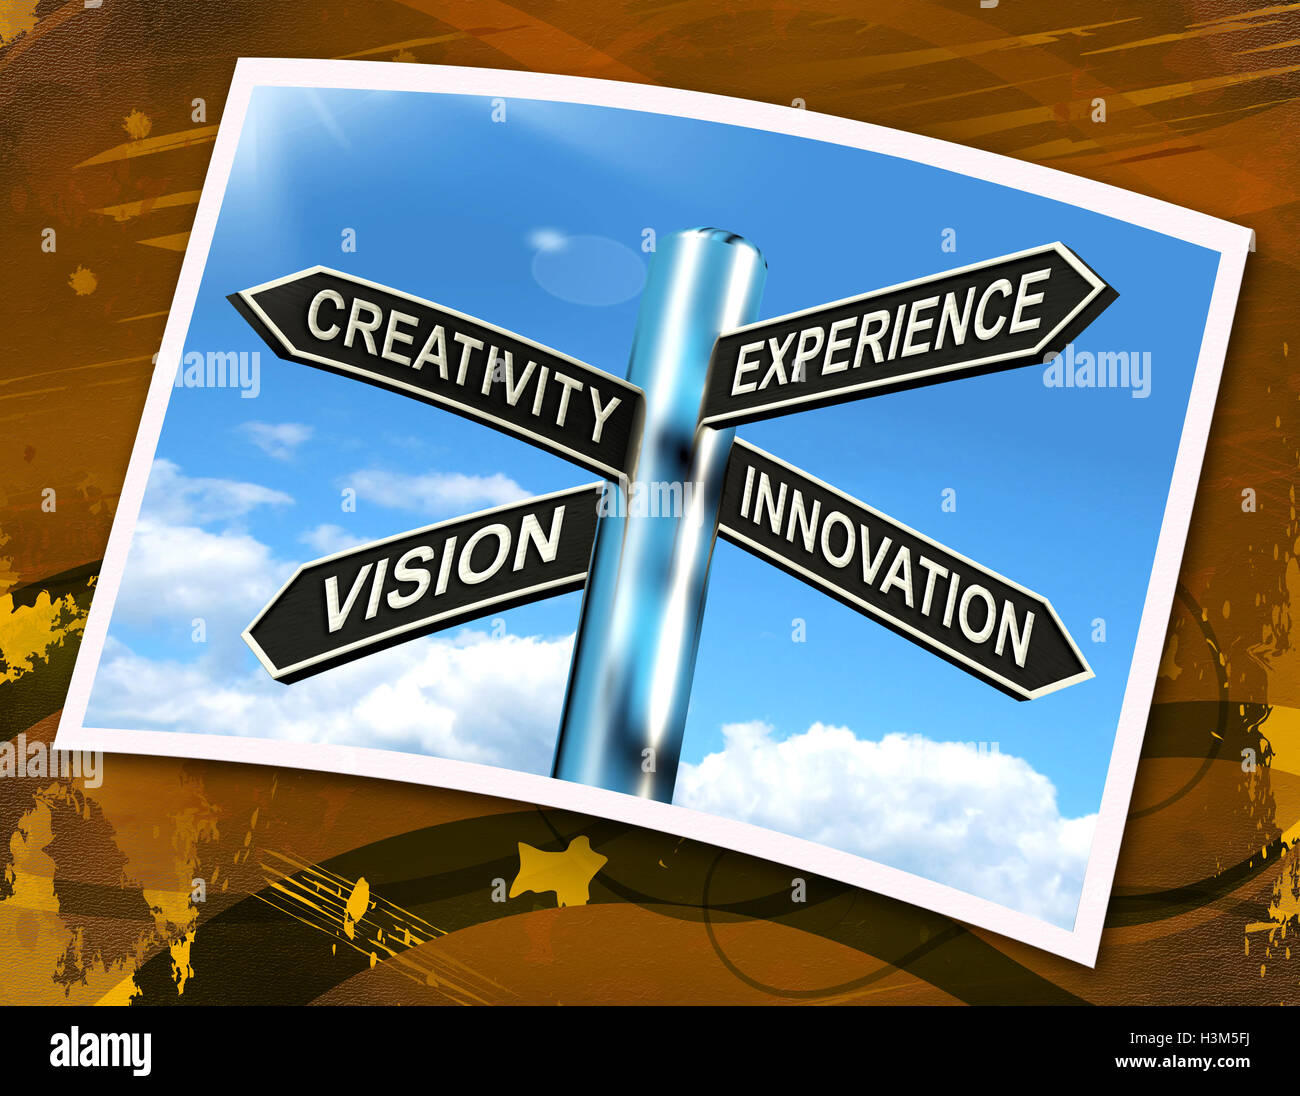 Creatività Esperienza Innovazione Visione firmare significa Business svil Foto Stock